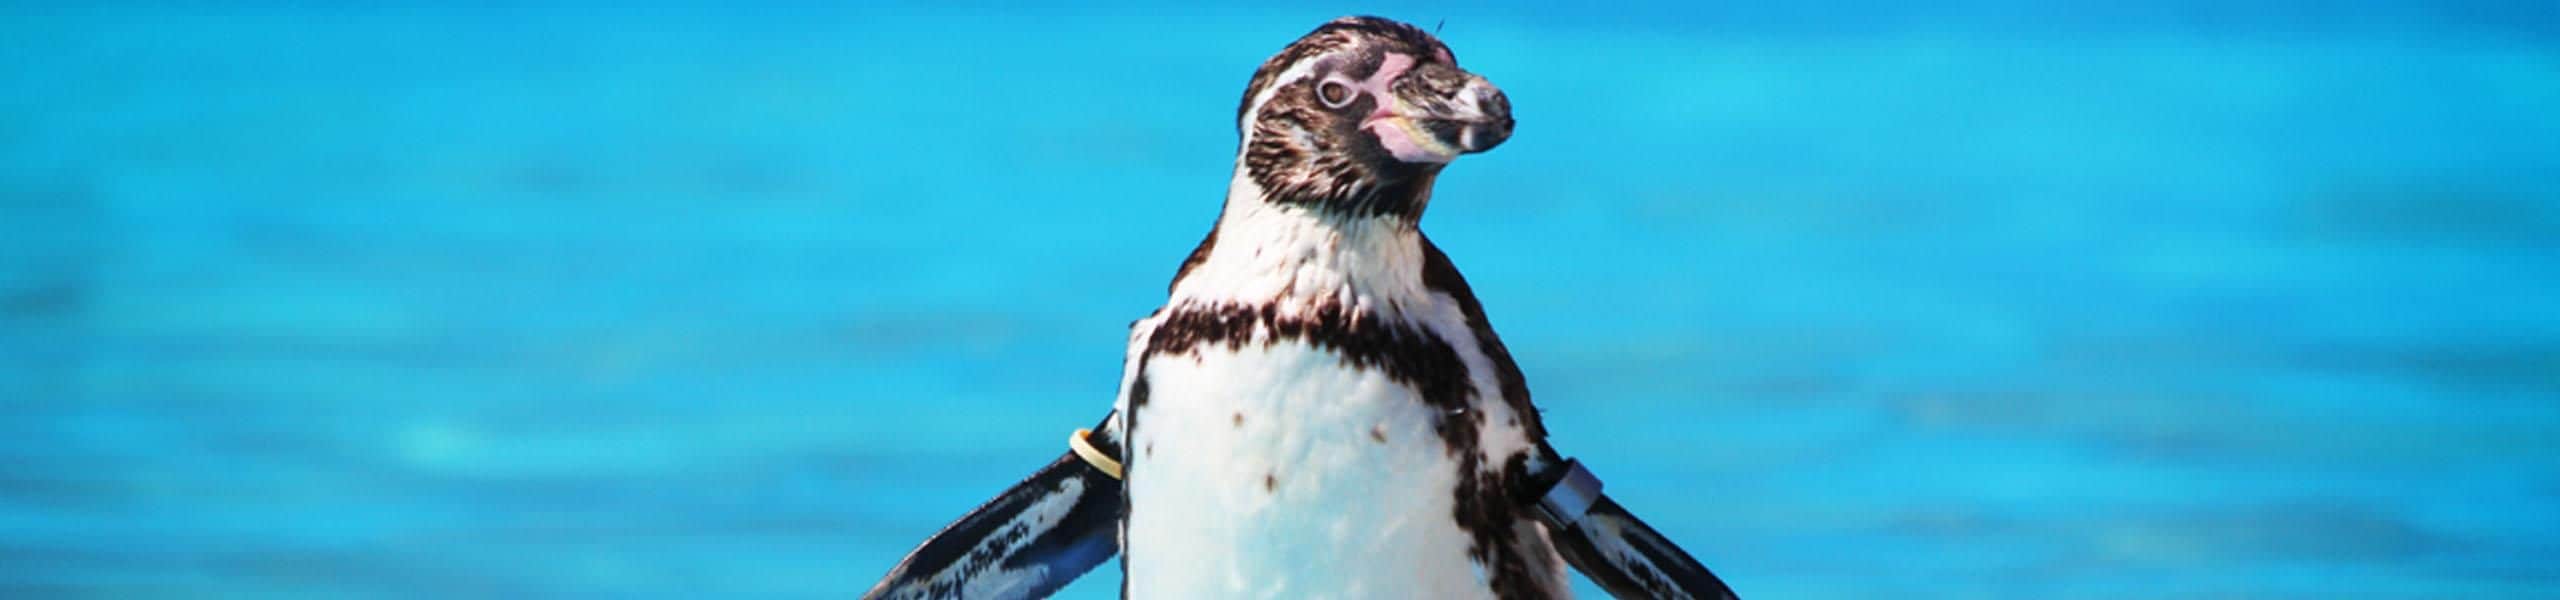 Humboldt Penguins - Spheniscus humboldti | Paultons Park